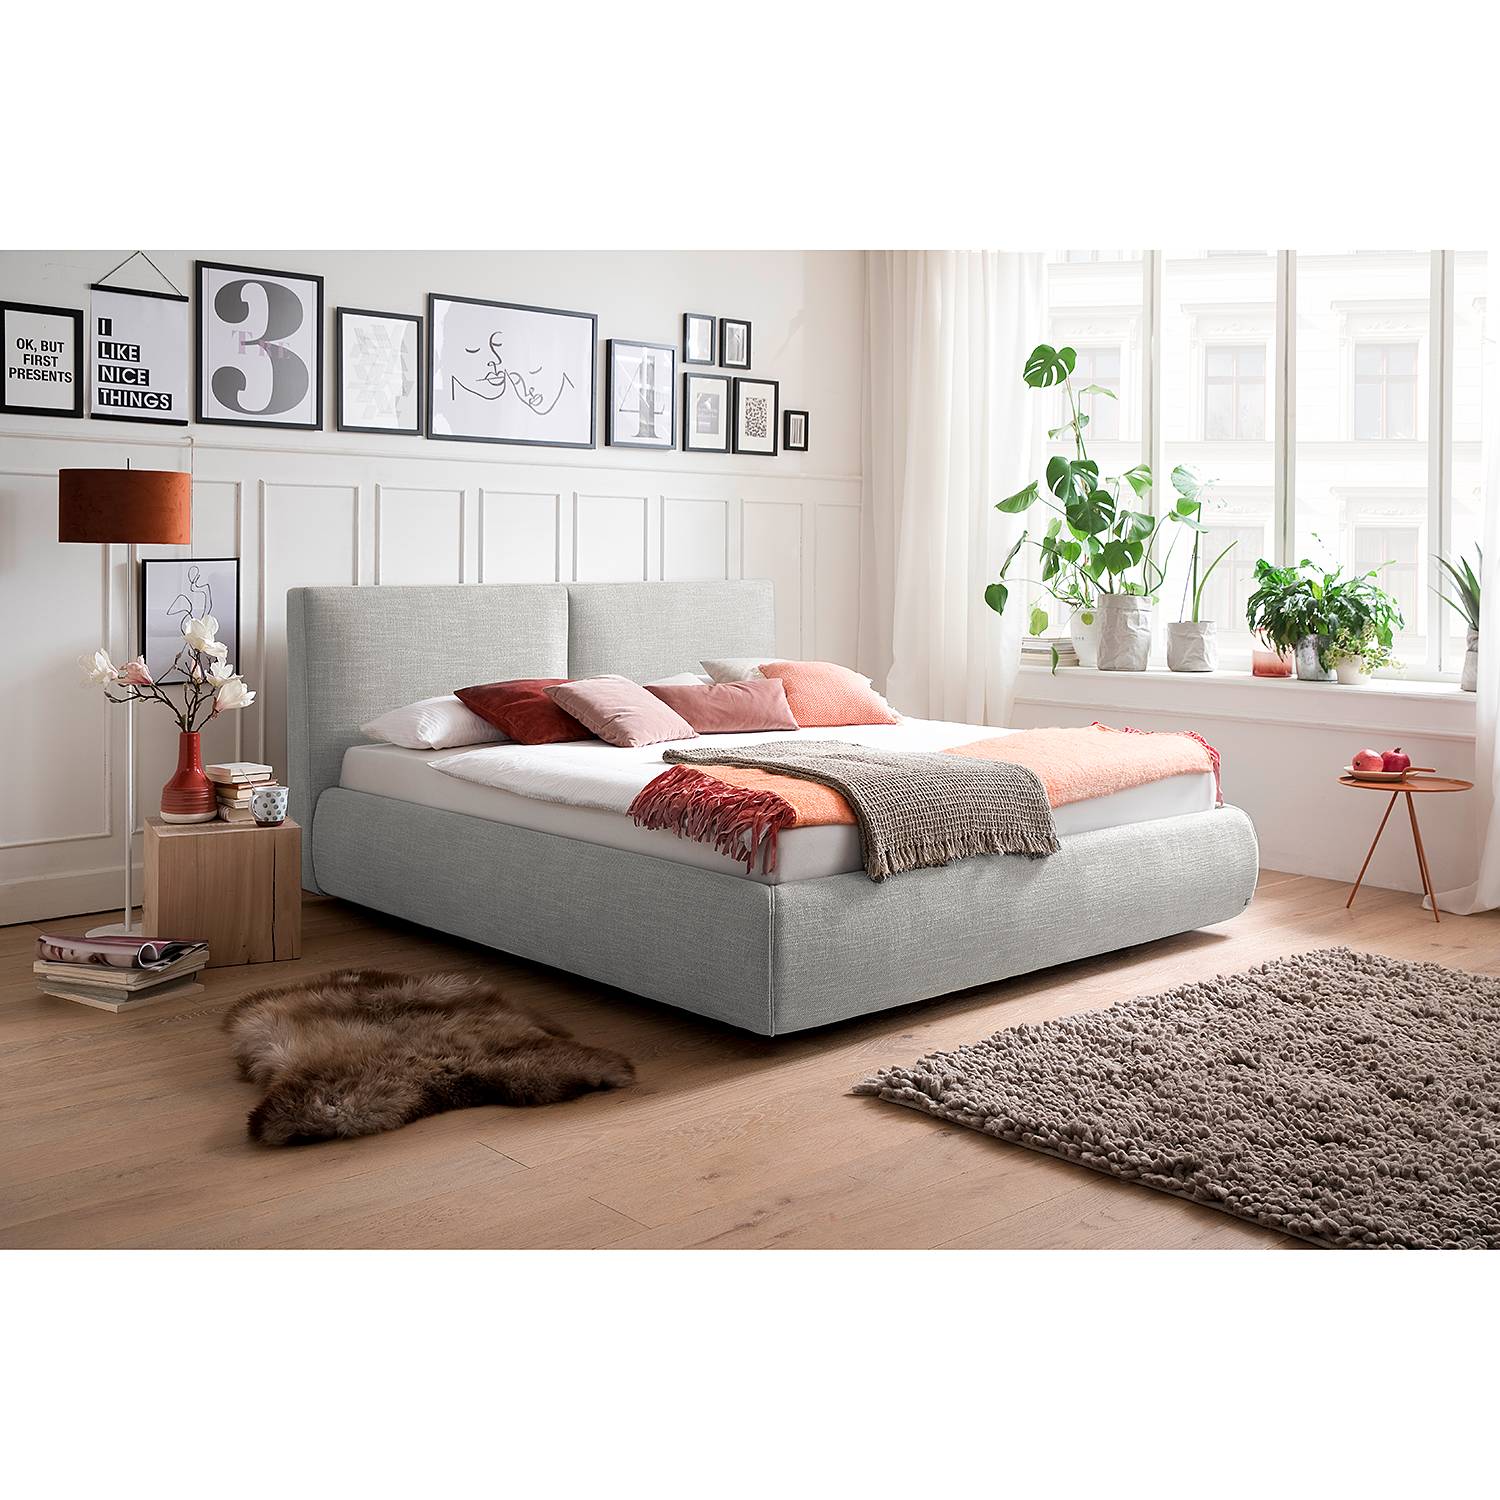 meise.möbel Polsterbett Atesio III 180x200 cm 90% Polyester/10% Baumwolle hellgrau mit Bettkästen/Lattenrost/Matratze von meise.möbel